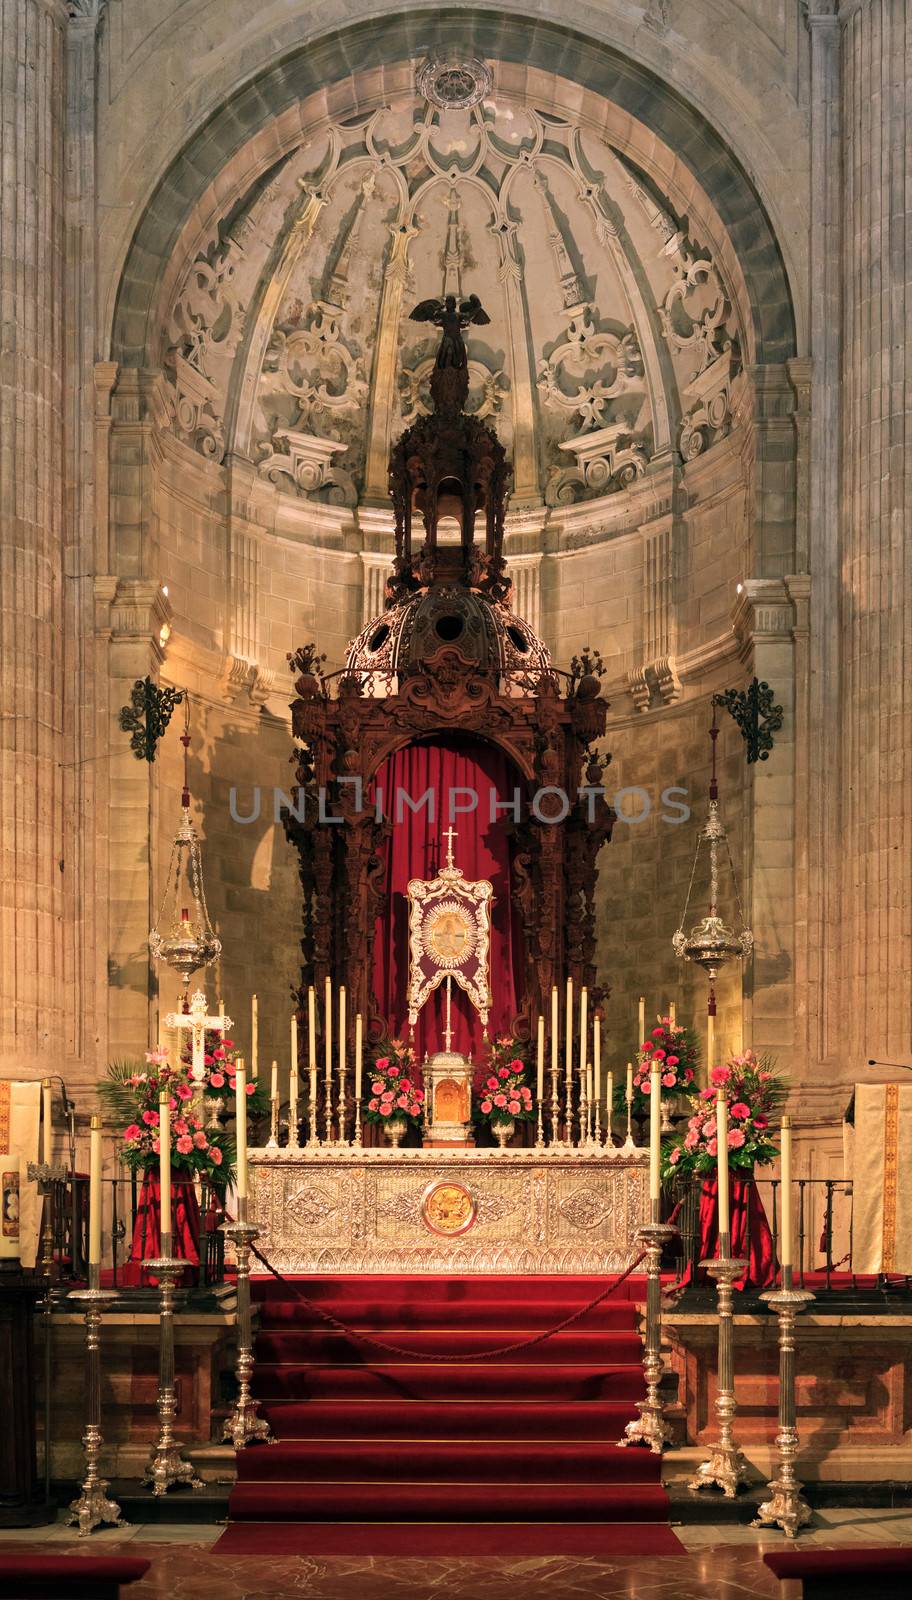 Santa Maria church, Ronda, Spain - church interior in the cathedral